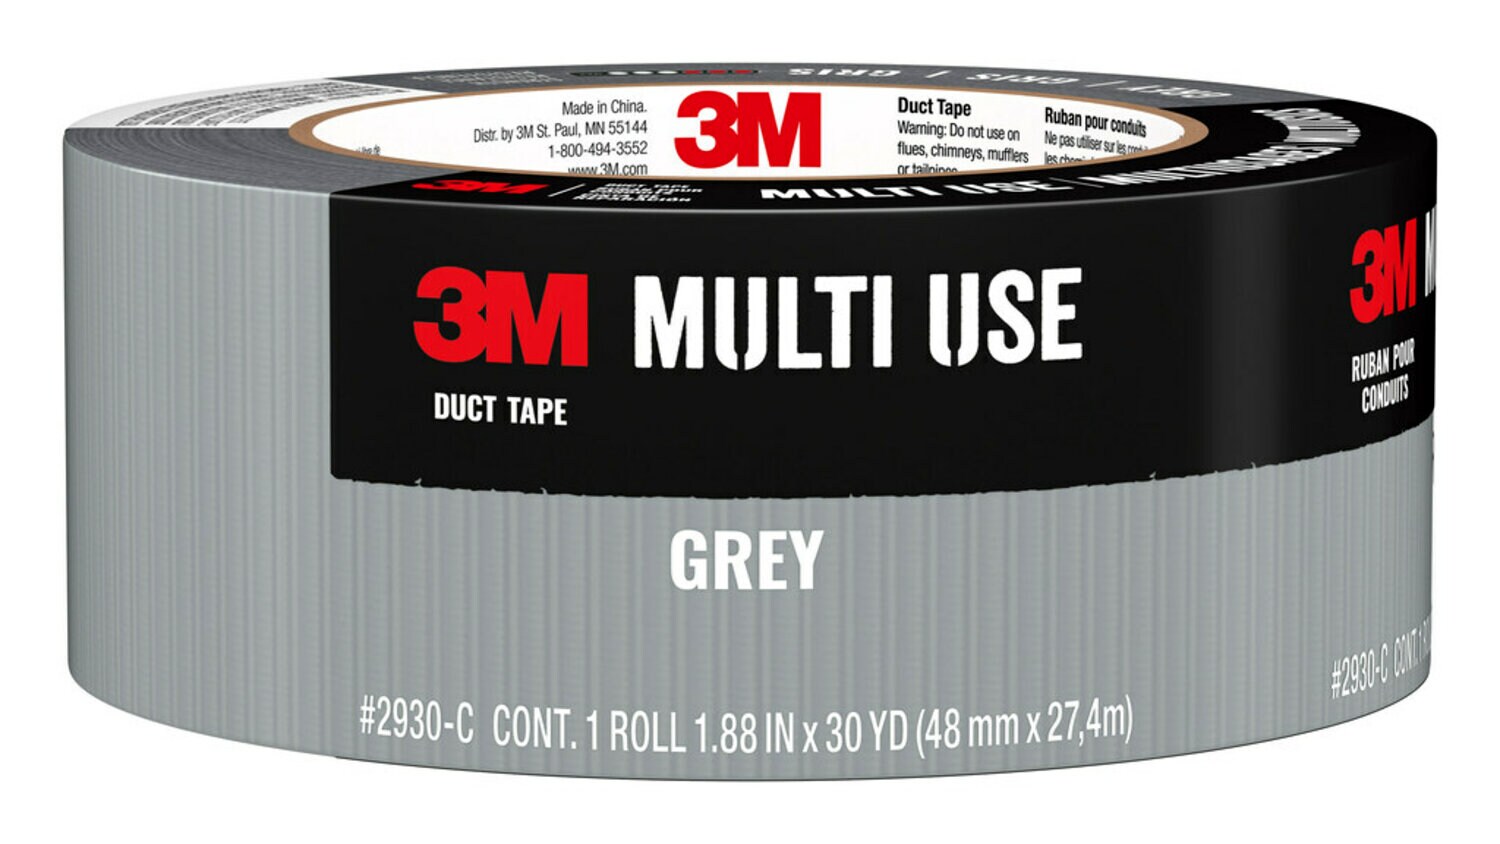 7100214361 - 3M Multi-Use Duct Tape, 2930-C, 1.88 in x 30 yd (48,0 mm x 27,4 m) 12 rls/cs